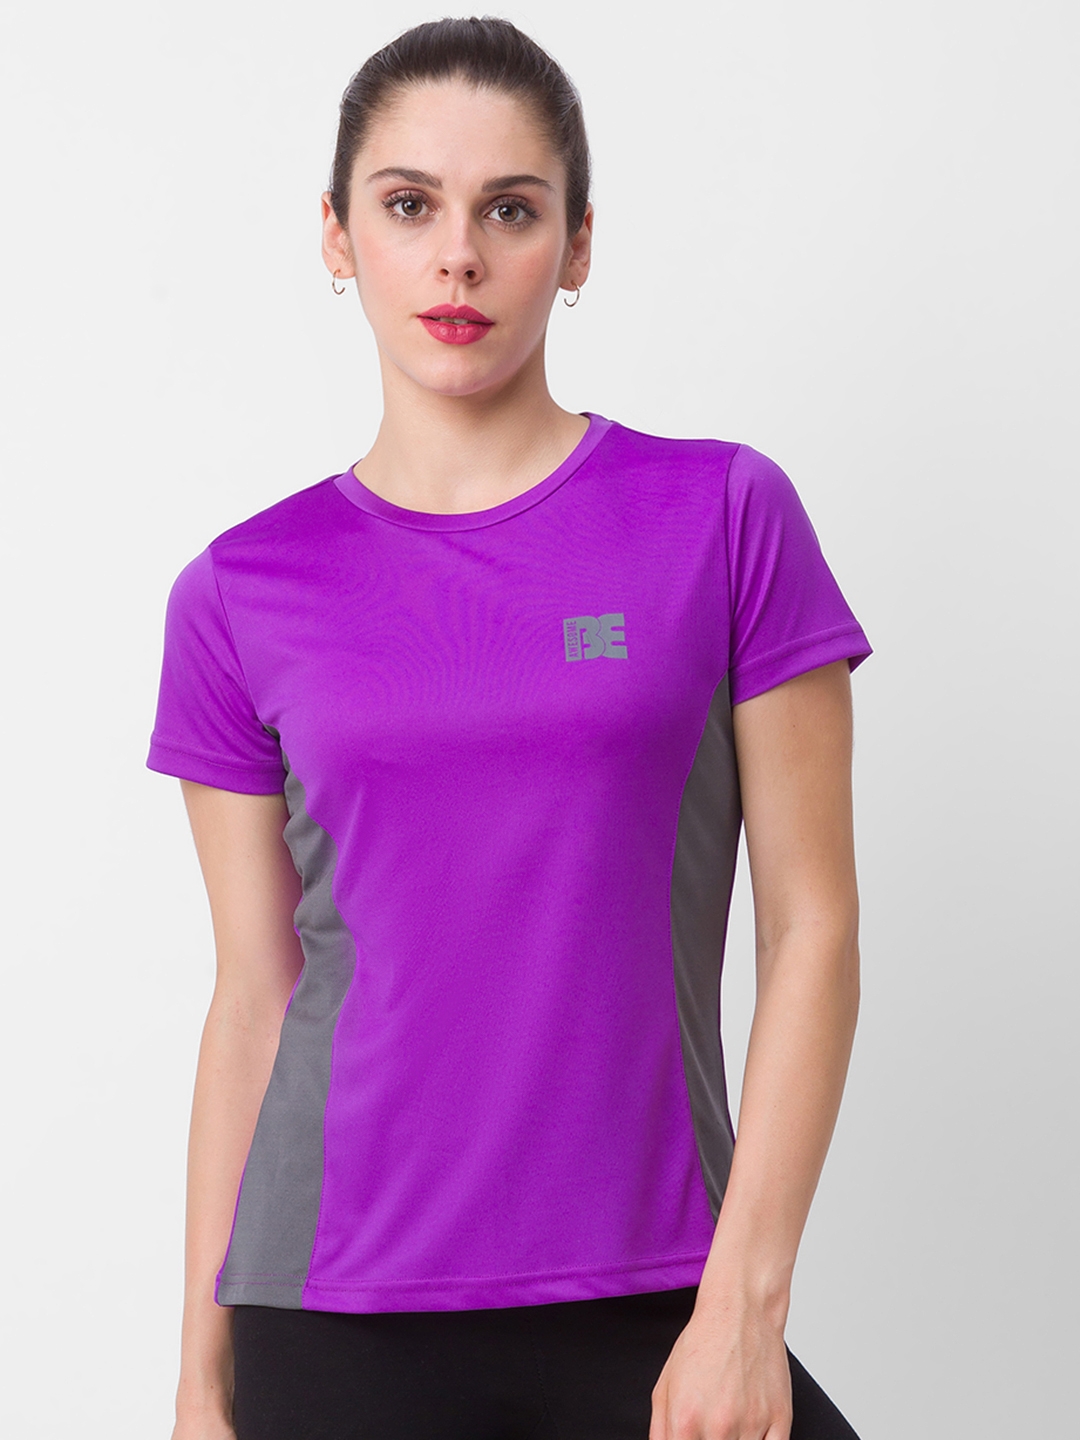 globus | Globus Purple Colourblocked Tshirt